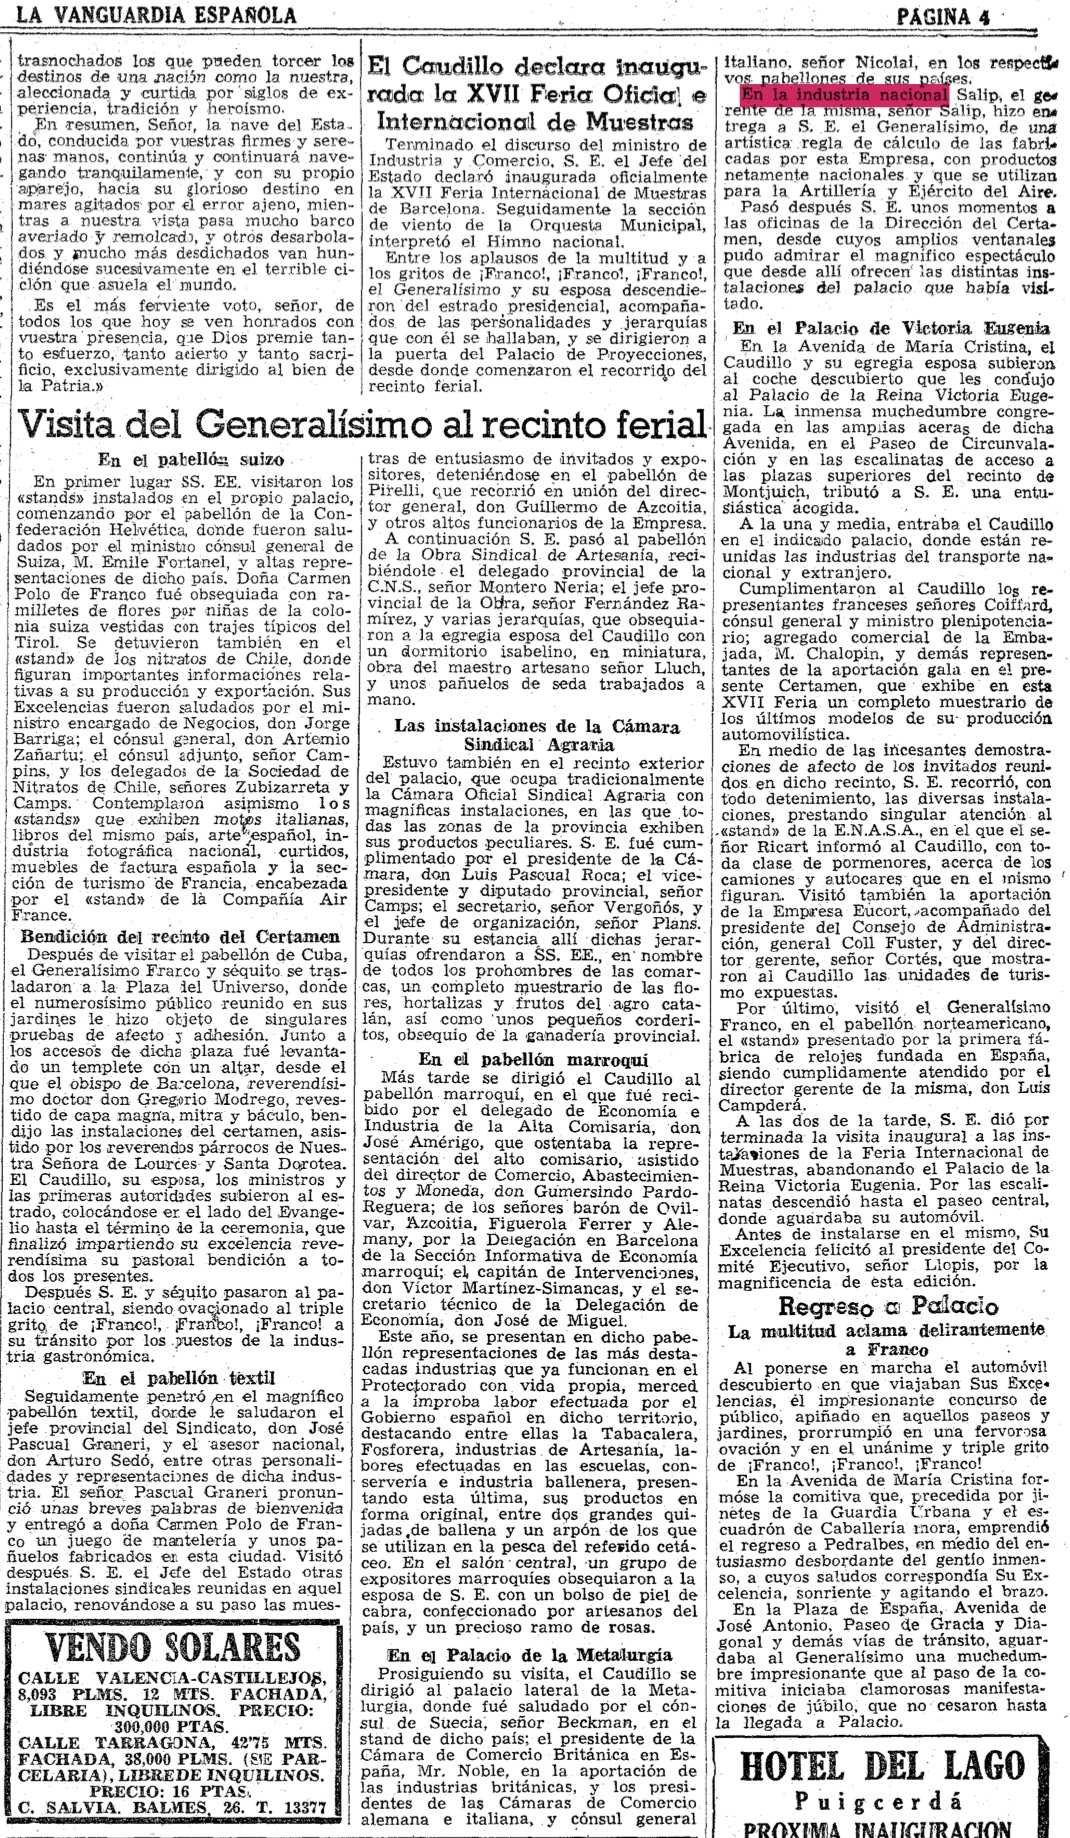 1949-06-11_Franco_visita_la_Feria_y_le_regalan_una_RC_Salip